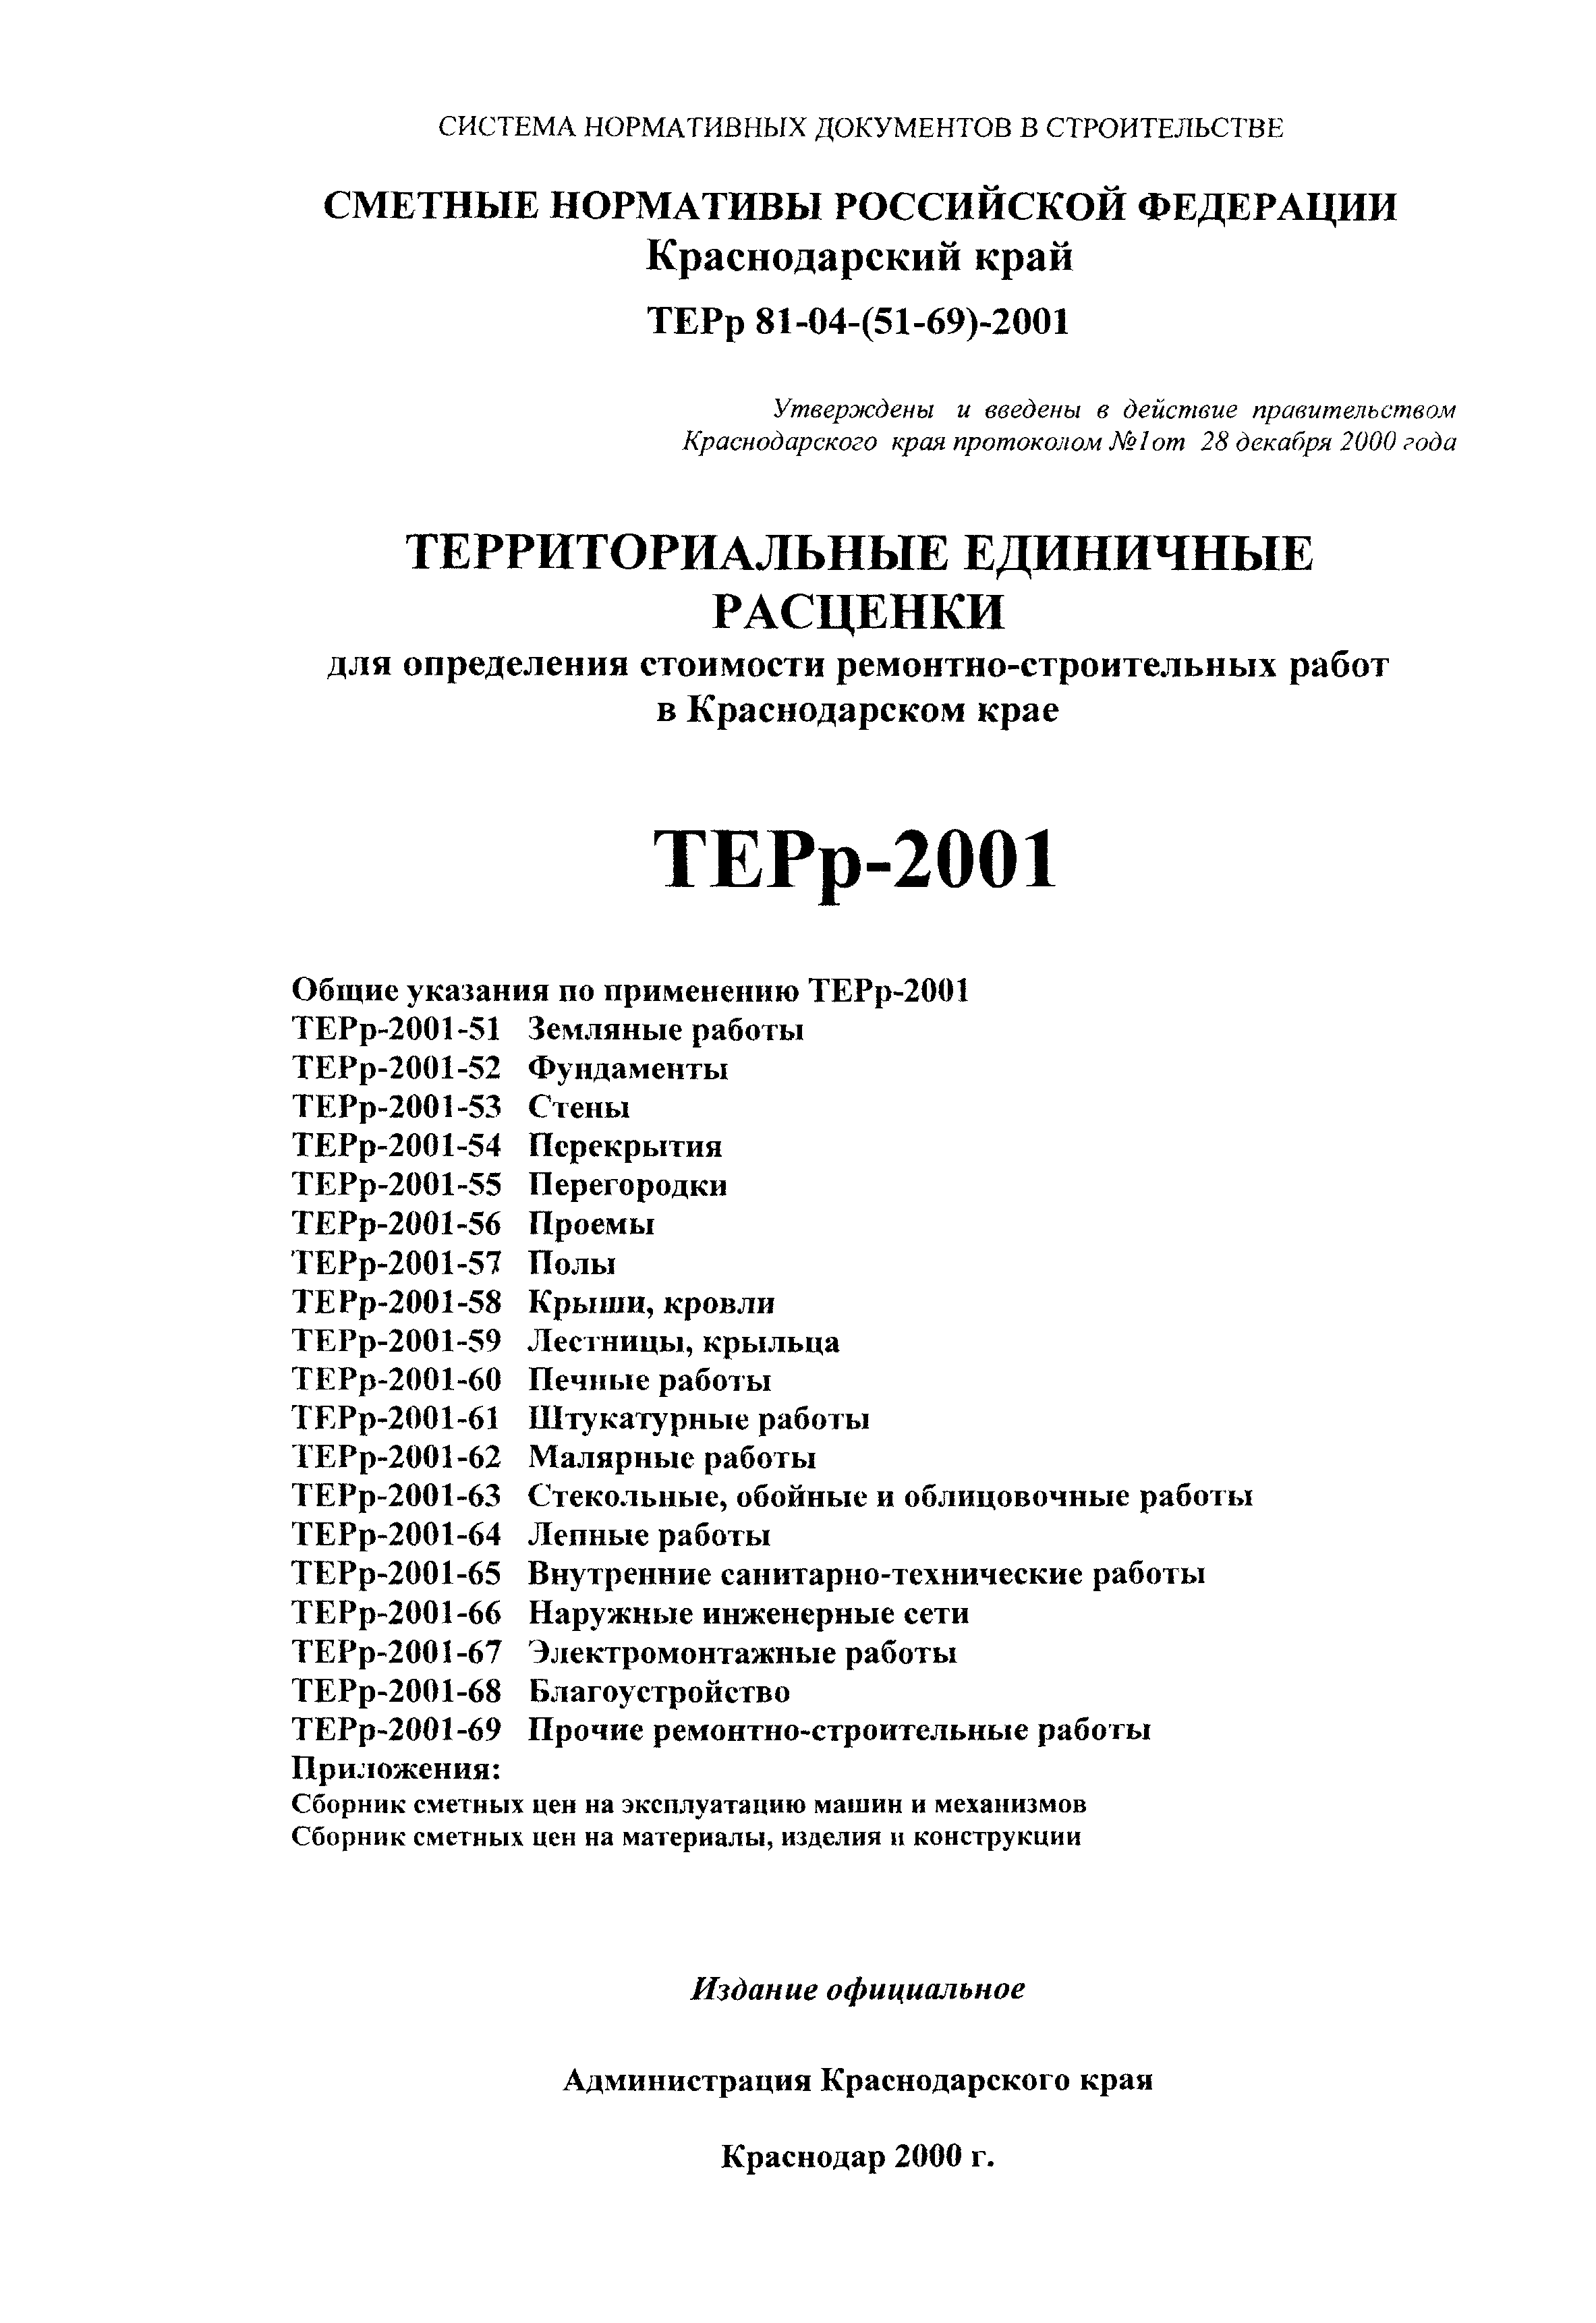 ТЕРр Краснодарского края 2001-63